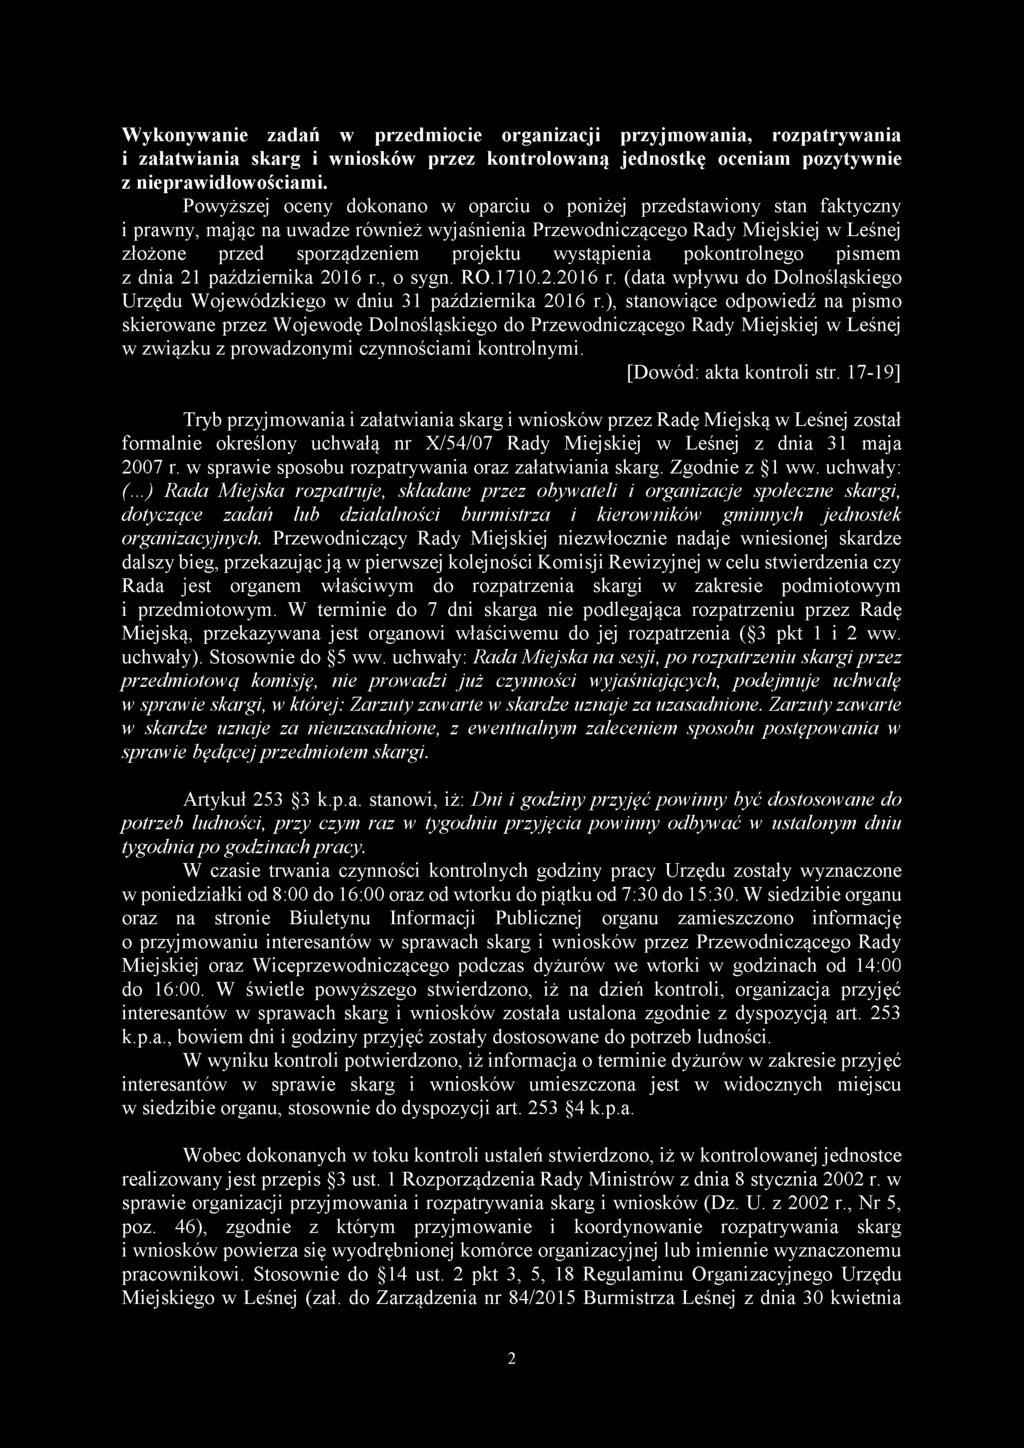 wystąpienia pokontrolnego pismem z dnia 21 października 2016 r., o sygn. RO.1710.2.2016 r. (data wpływu do Dolnośląskiego Urzędu Wojewódzkiego w dniu 31 października 2016 r.